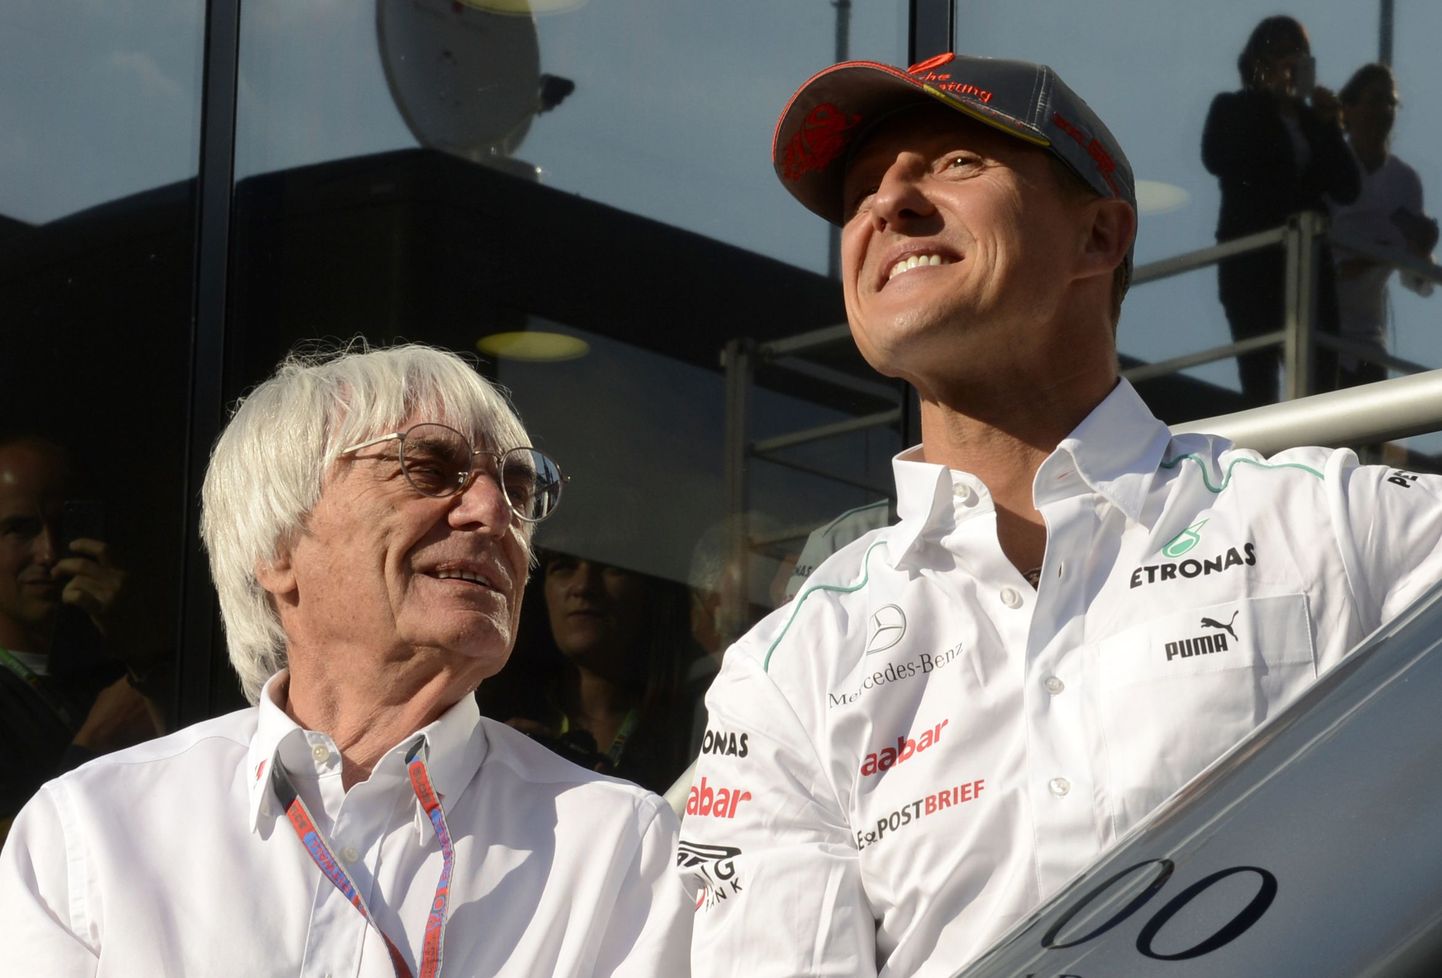 Michael Schumacher ja Bernie Ecclestone (vasakul).